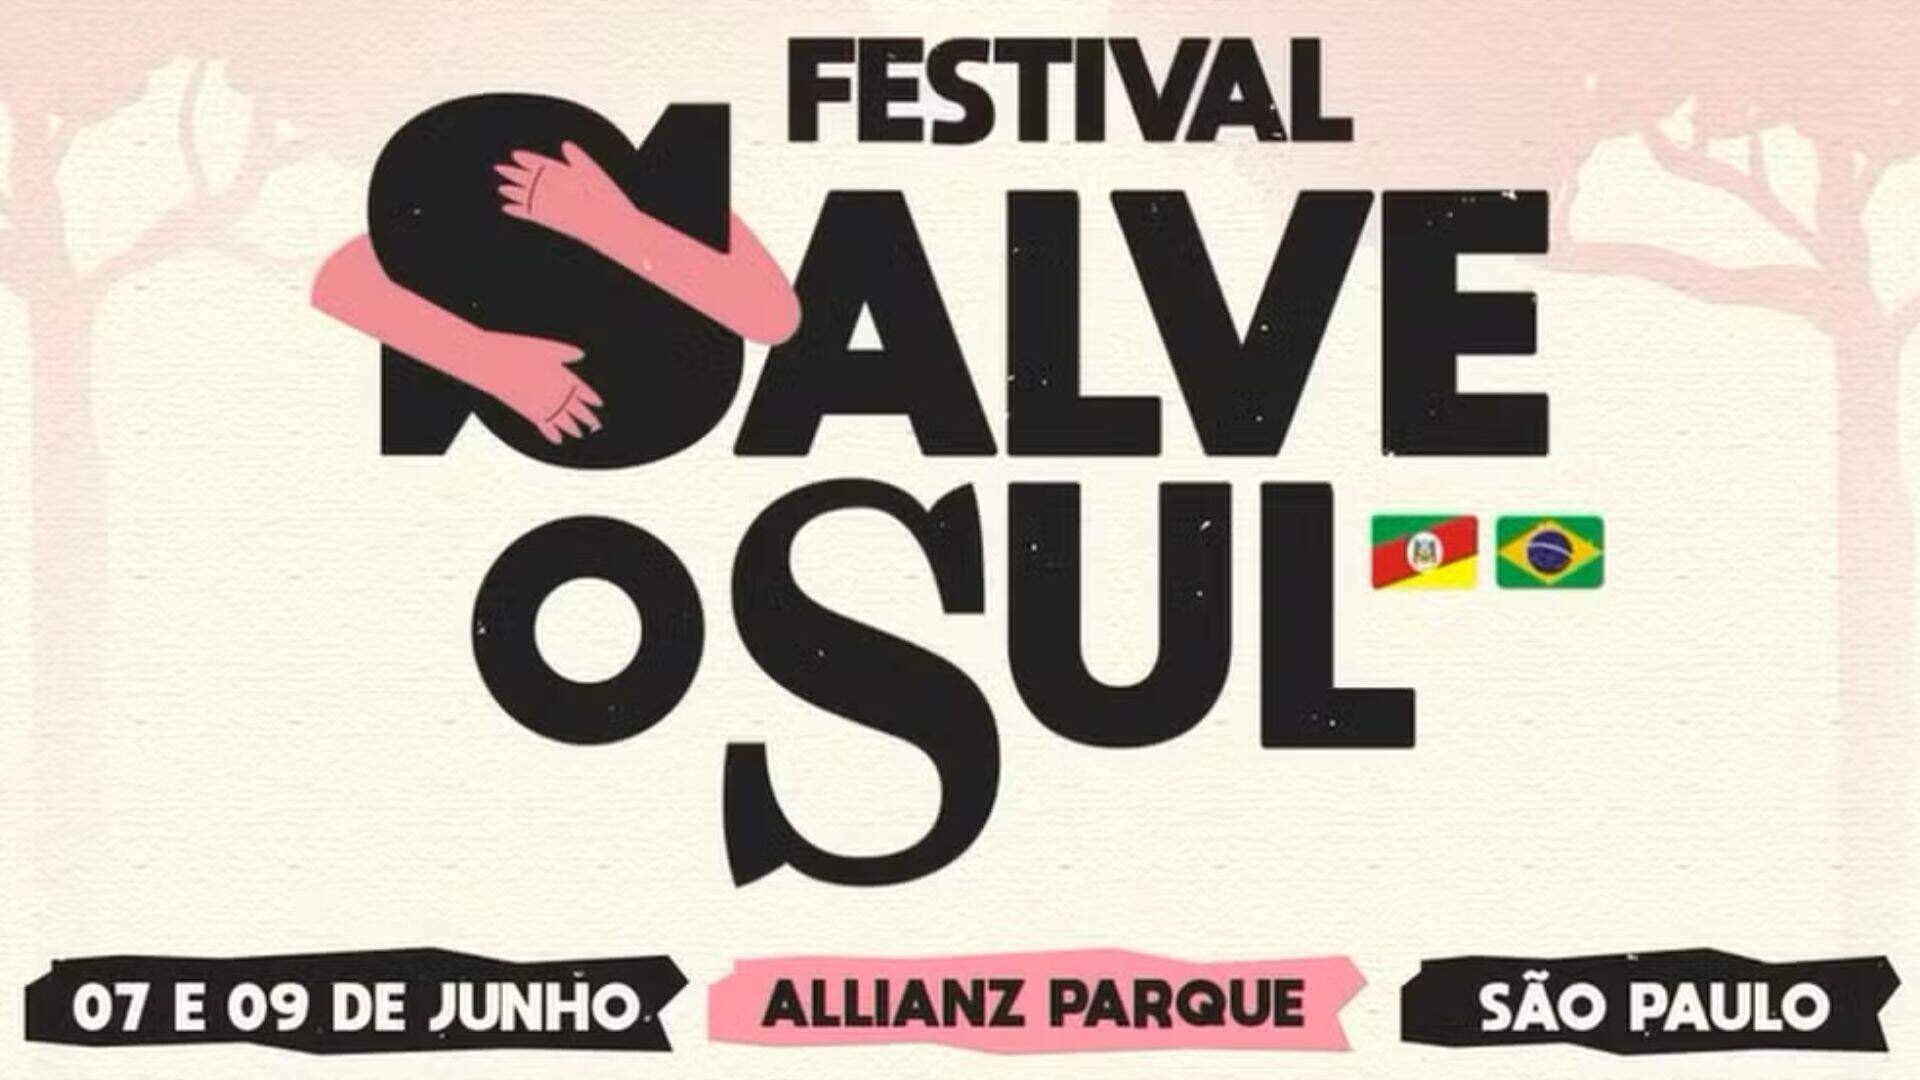 Salve o Sul: Nomes de peso se reúnem em festival em prol do Rio Grande do Sul